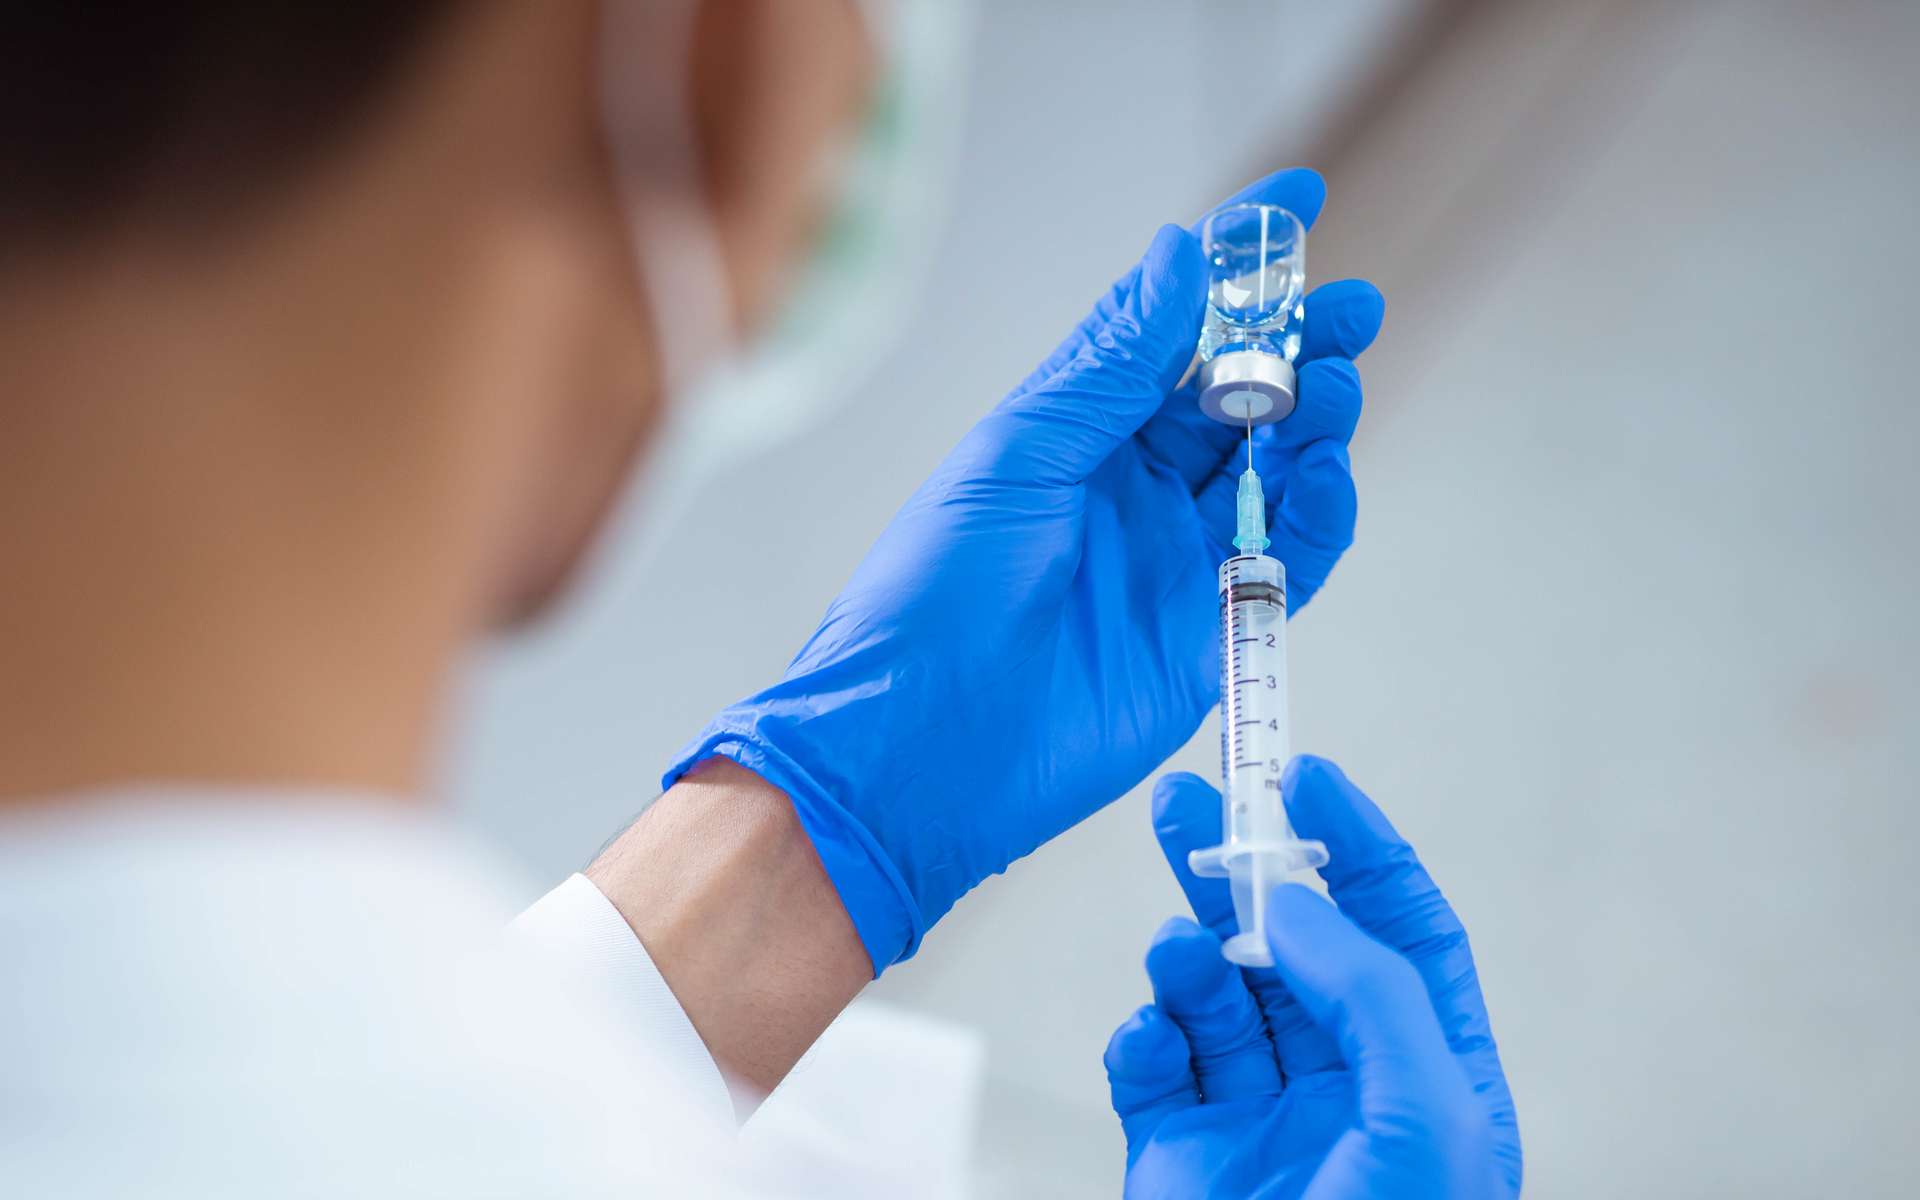 Les scientifiques s'inquiètent de la défiance des populations à l'égard d'un vaccin et alertent les gouvernements. © Near, Adobe Stock